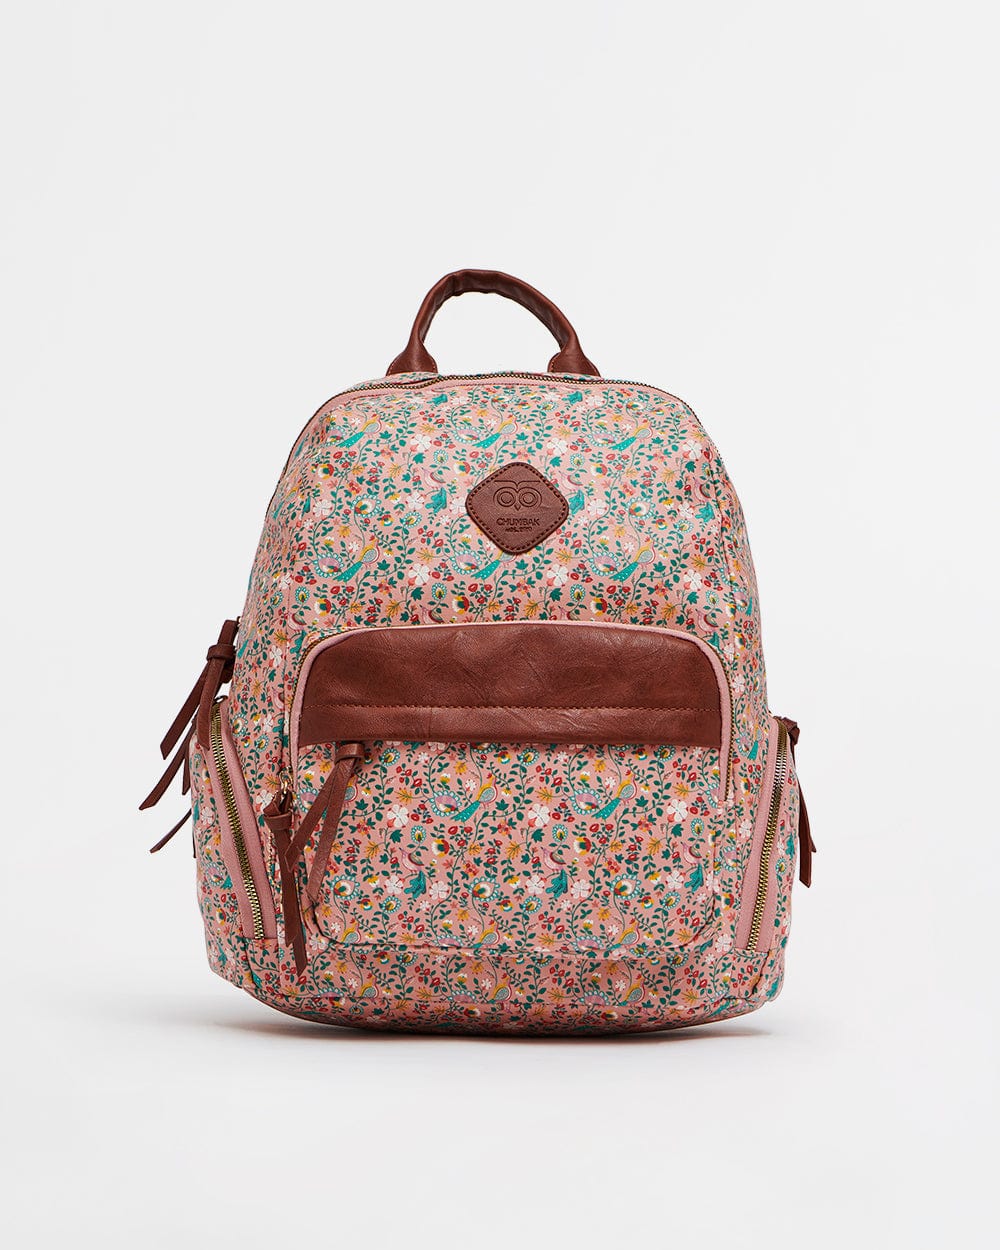 Little Days - Floral Backpack / Bag Charm / Set